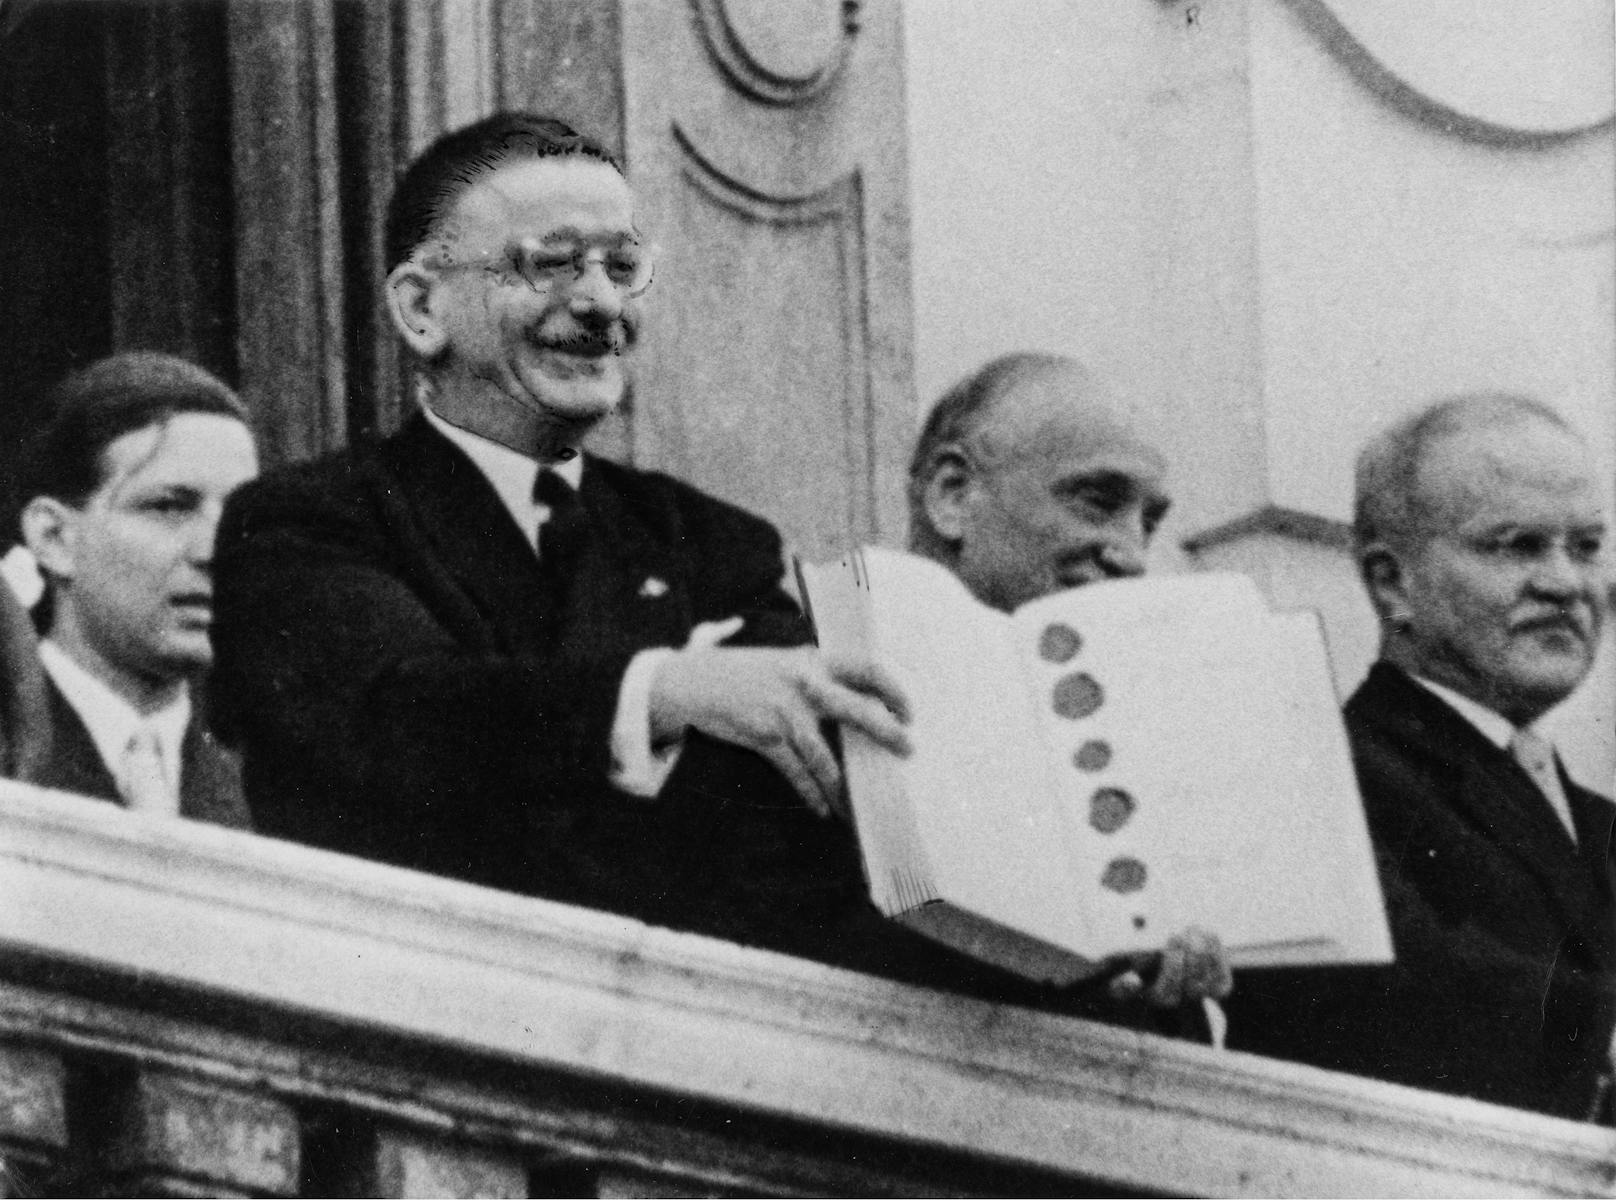 Außenminister Leopold Figl präsentiert der Menge den unterzeichneten Staatsvertrag. Den Satz "Österreich ist frei", hat er übrigens nicht am Balkon getätigt.